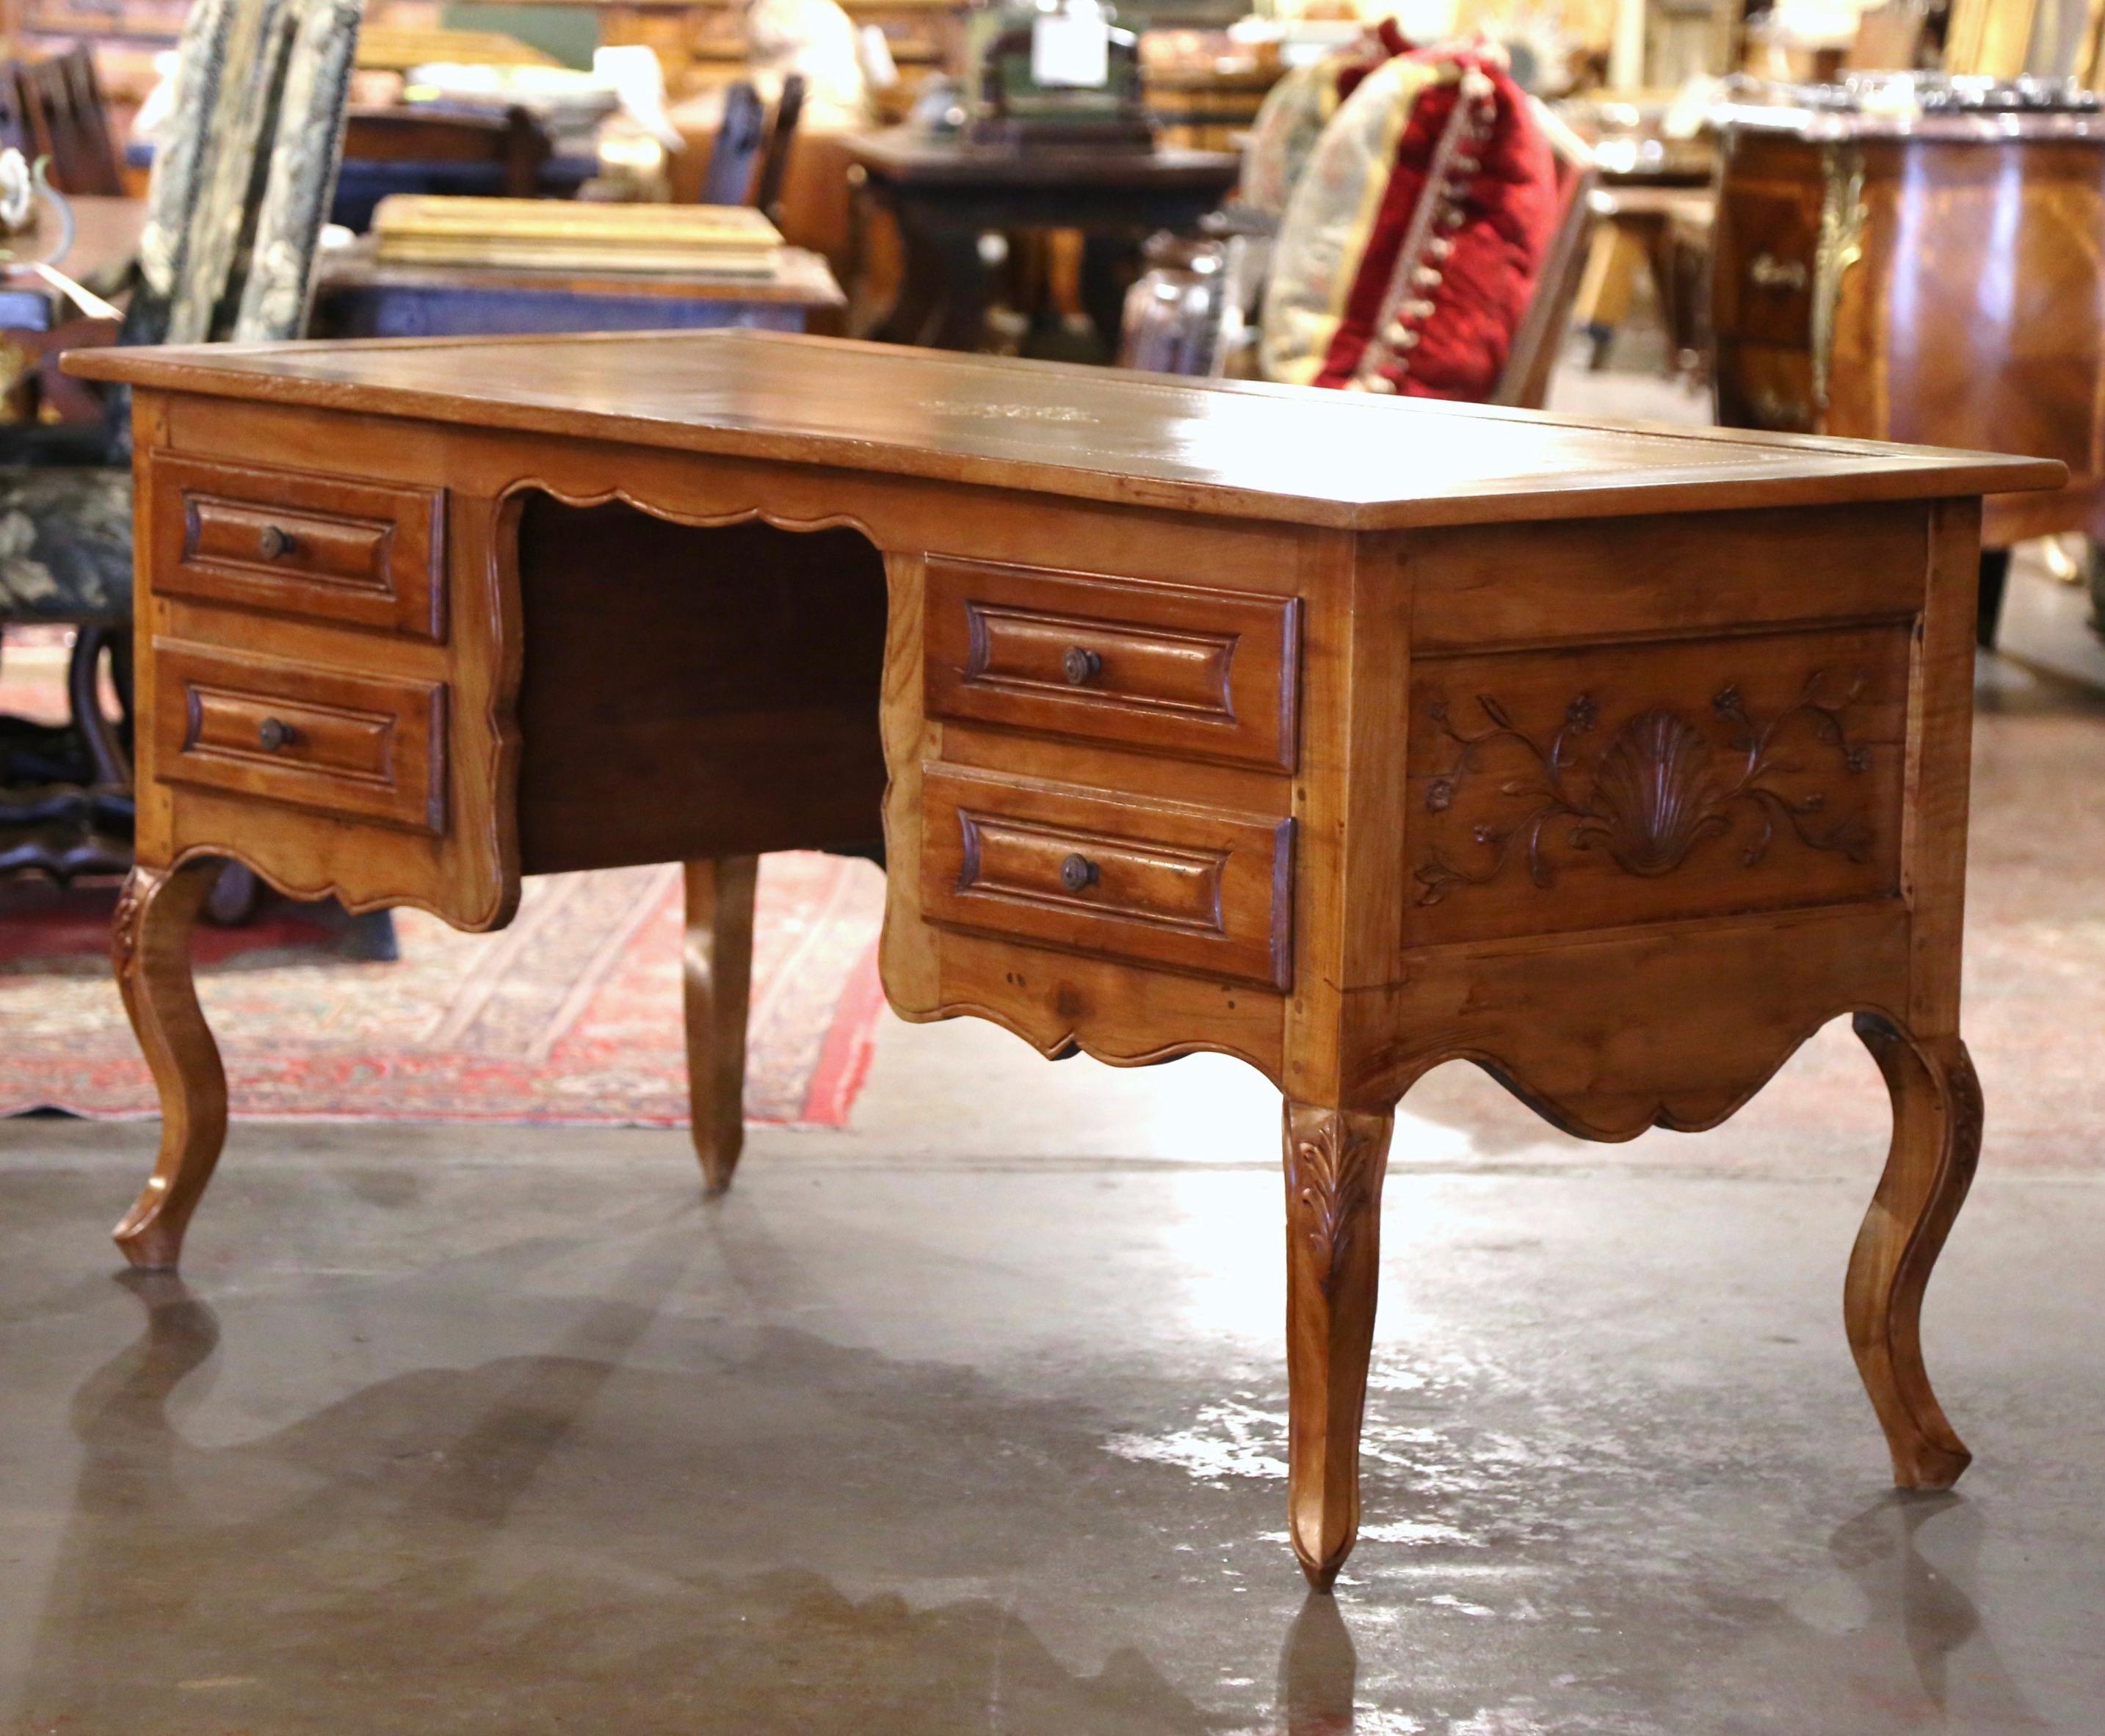 Dieser elegante antike Schreibtisch aus Obstholz wurde um 1890 in der Region Poitou in Frankreich hergestellt. Der große Schreibtisch aus Wildkirschholz ruht auf vier Kabriole-Beinen, die an der Schulter mit Akanthusblättern verziert sind, und einer